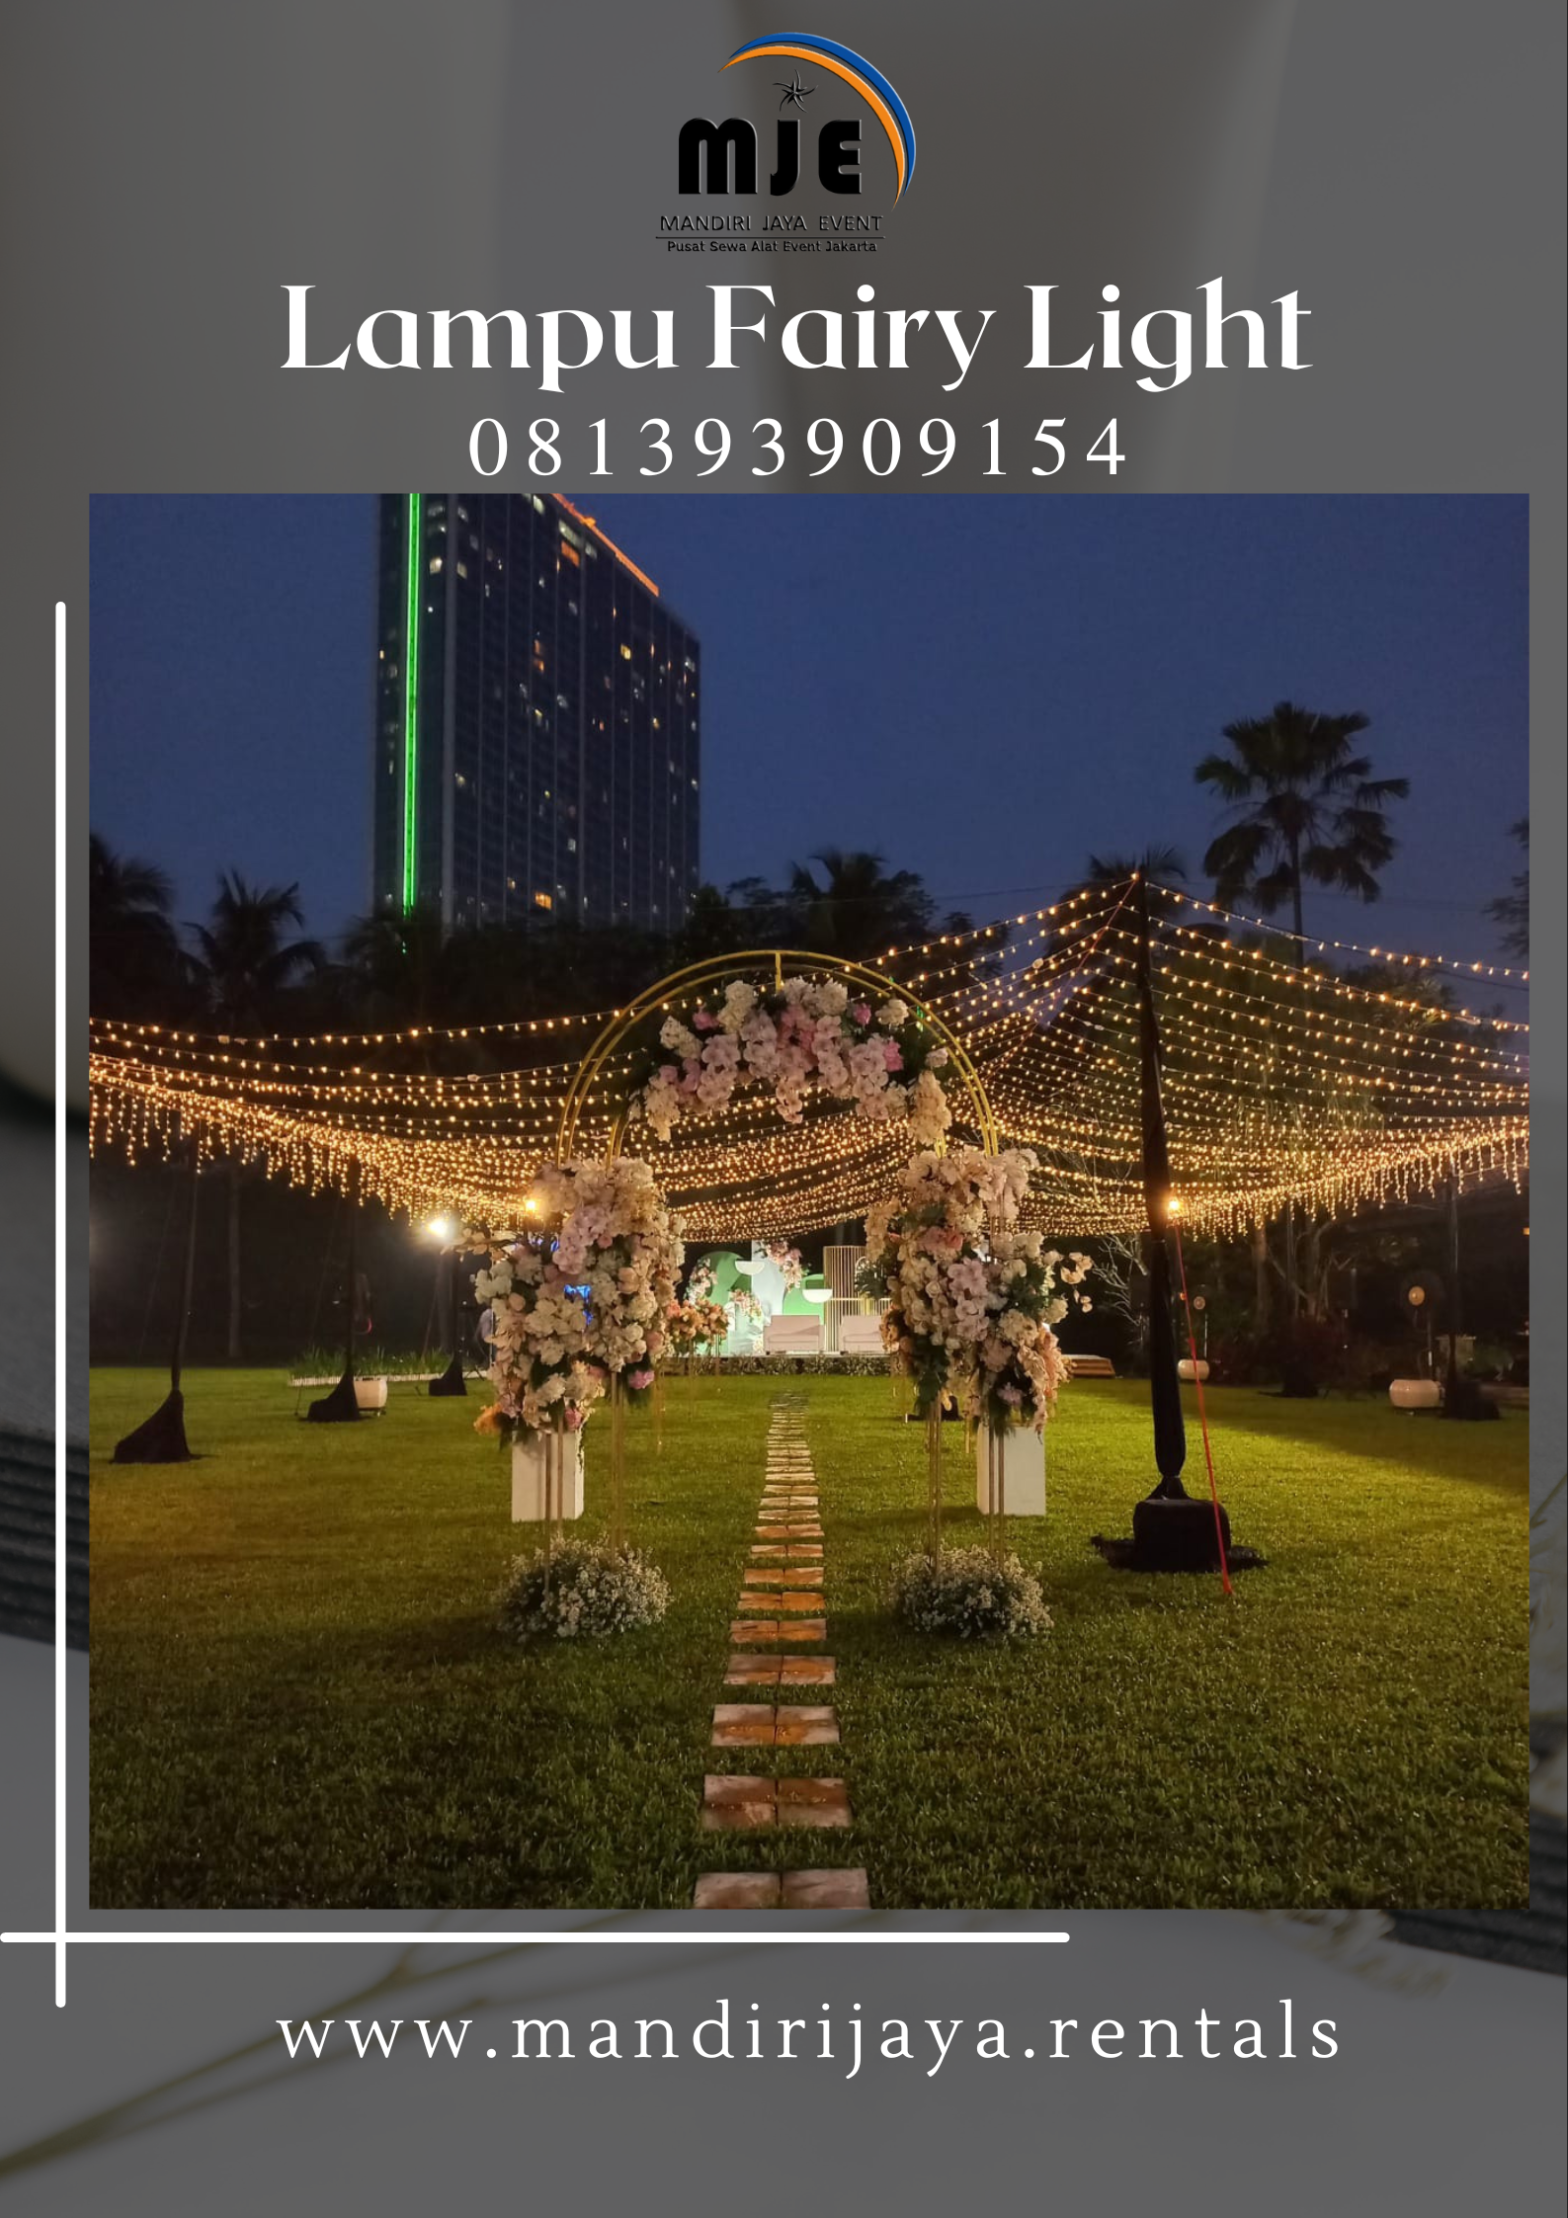 Rental Lampu Fairy Light Gandaria Selatan Cilandak Jakarta Selatan